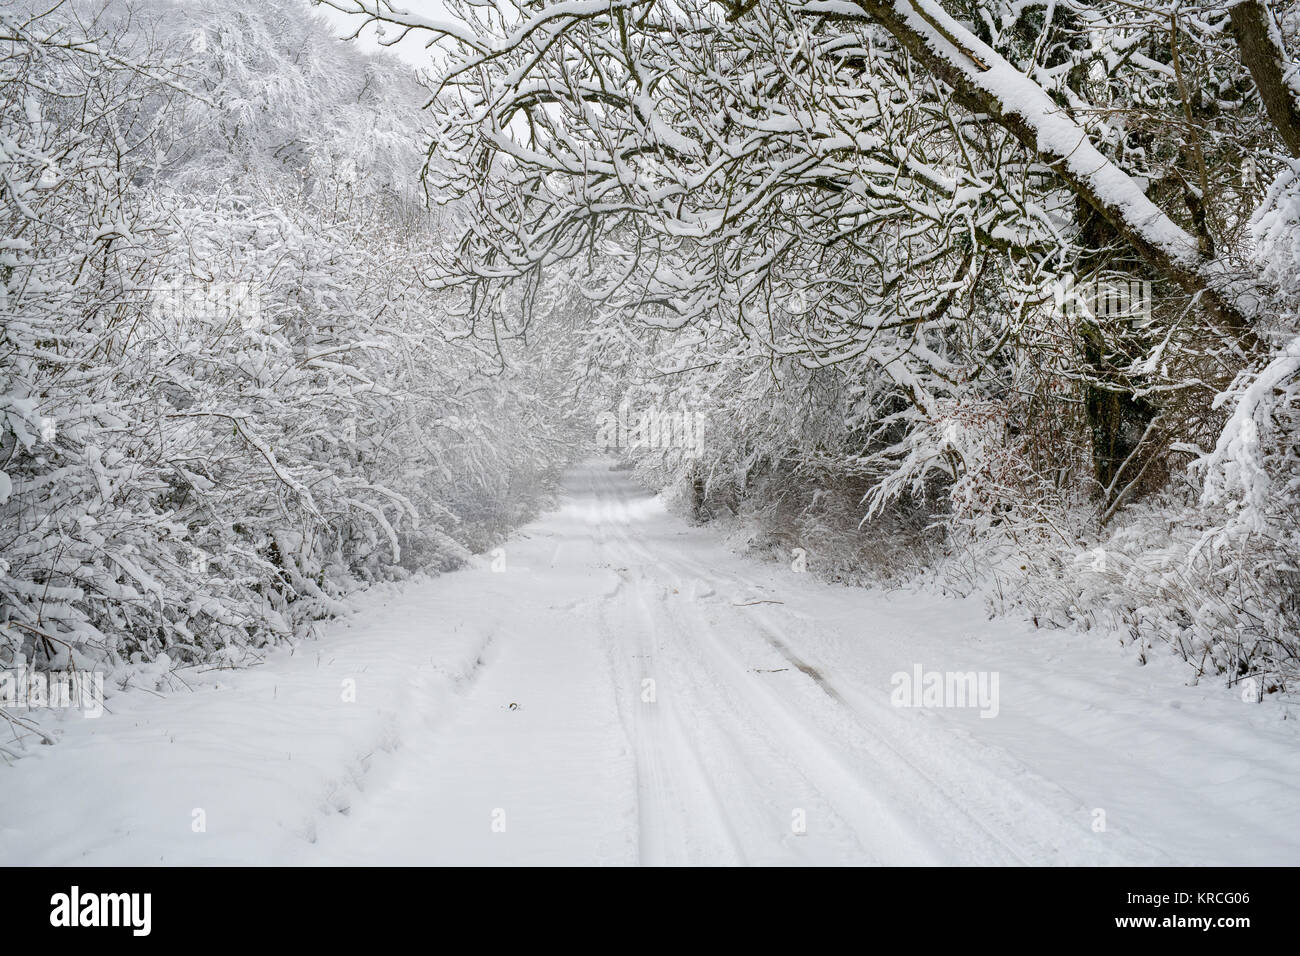 Route de campagne enneigée près de Snowshill village en décembre. Snowshill, Cotswolds, Gloucestershire, Angleterre Banque D'Images